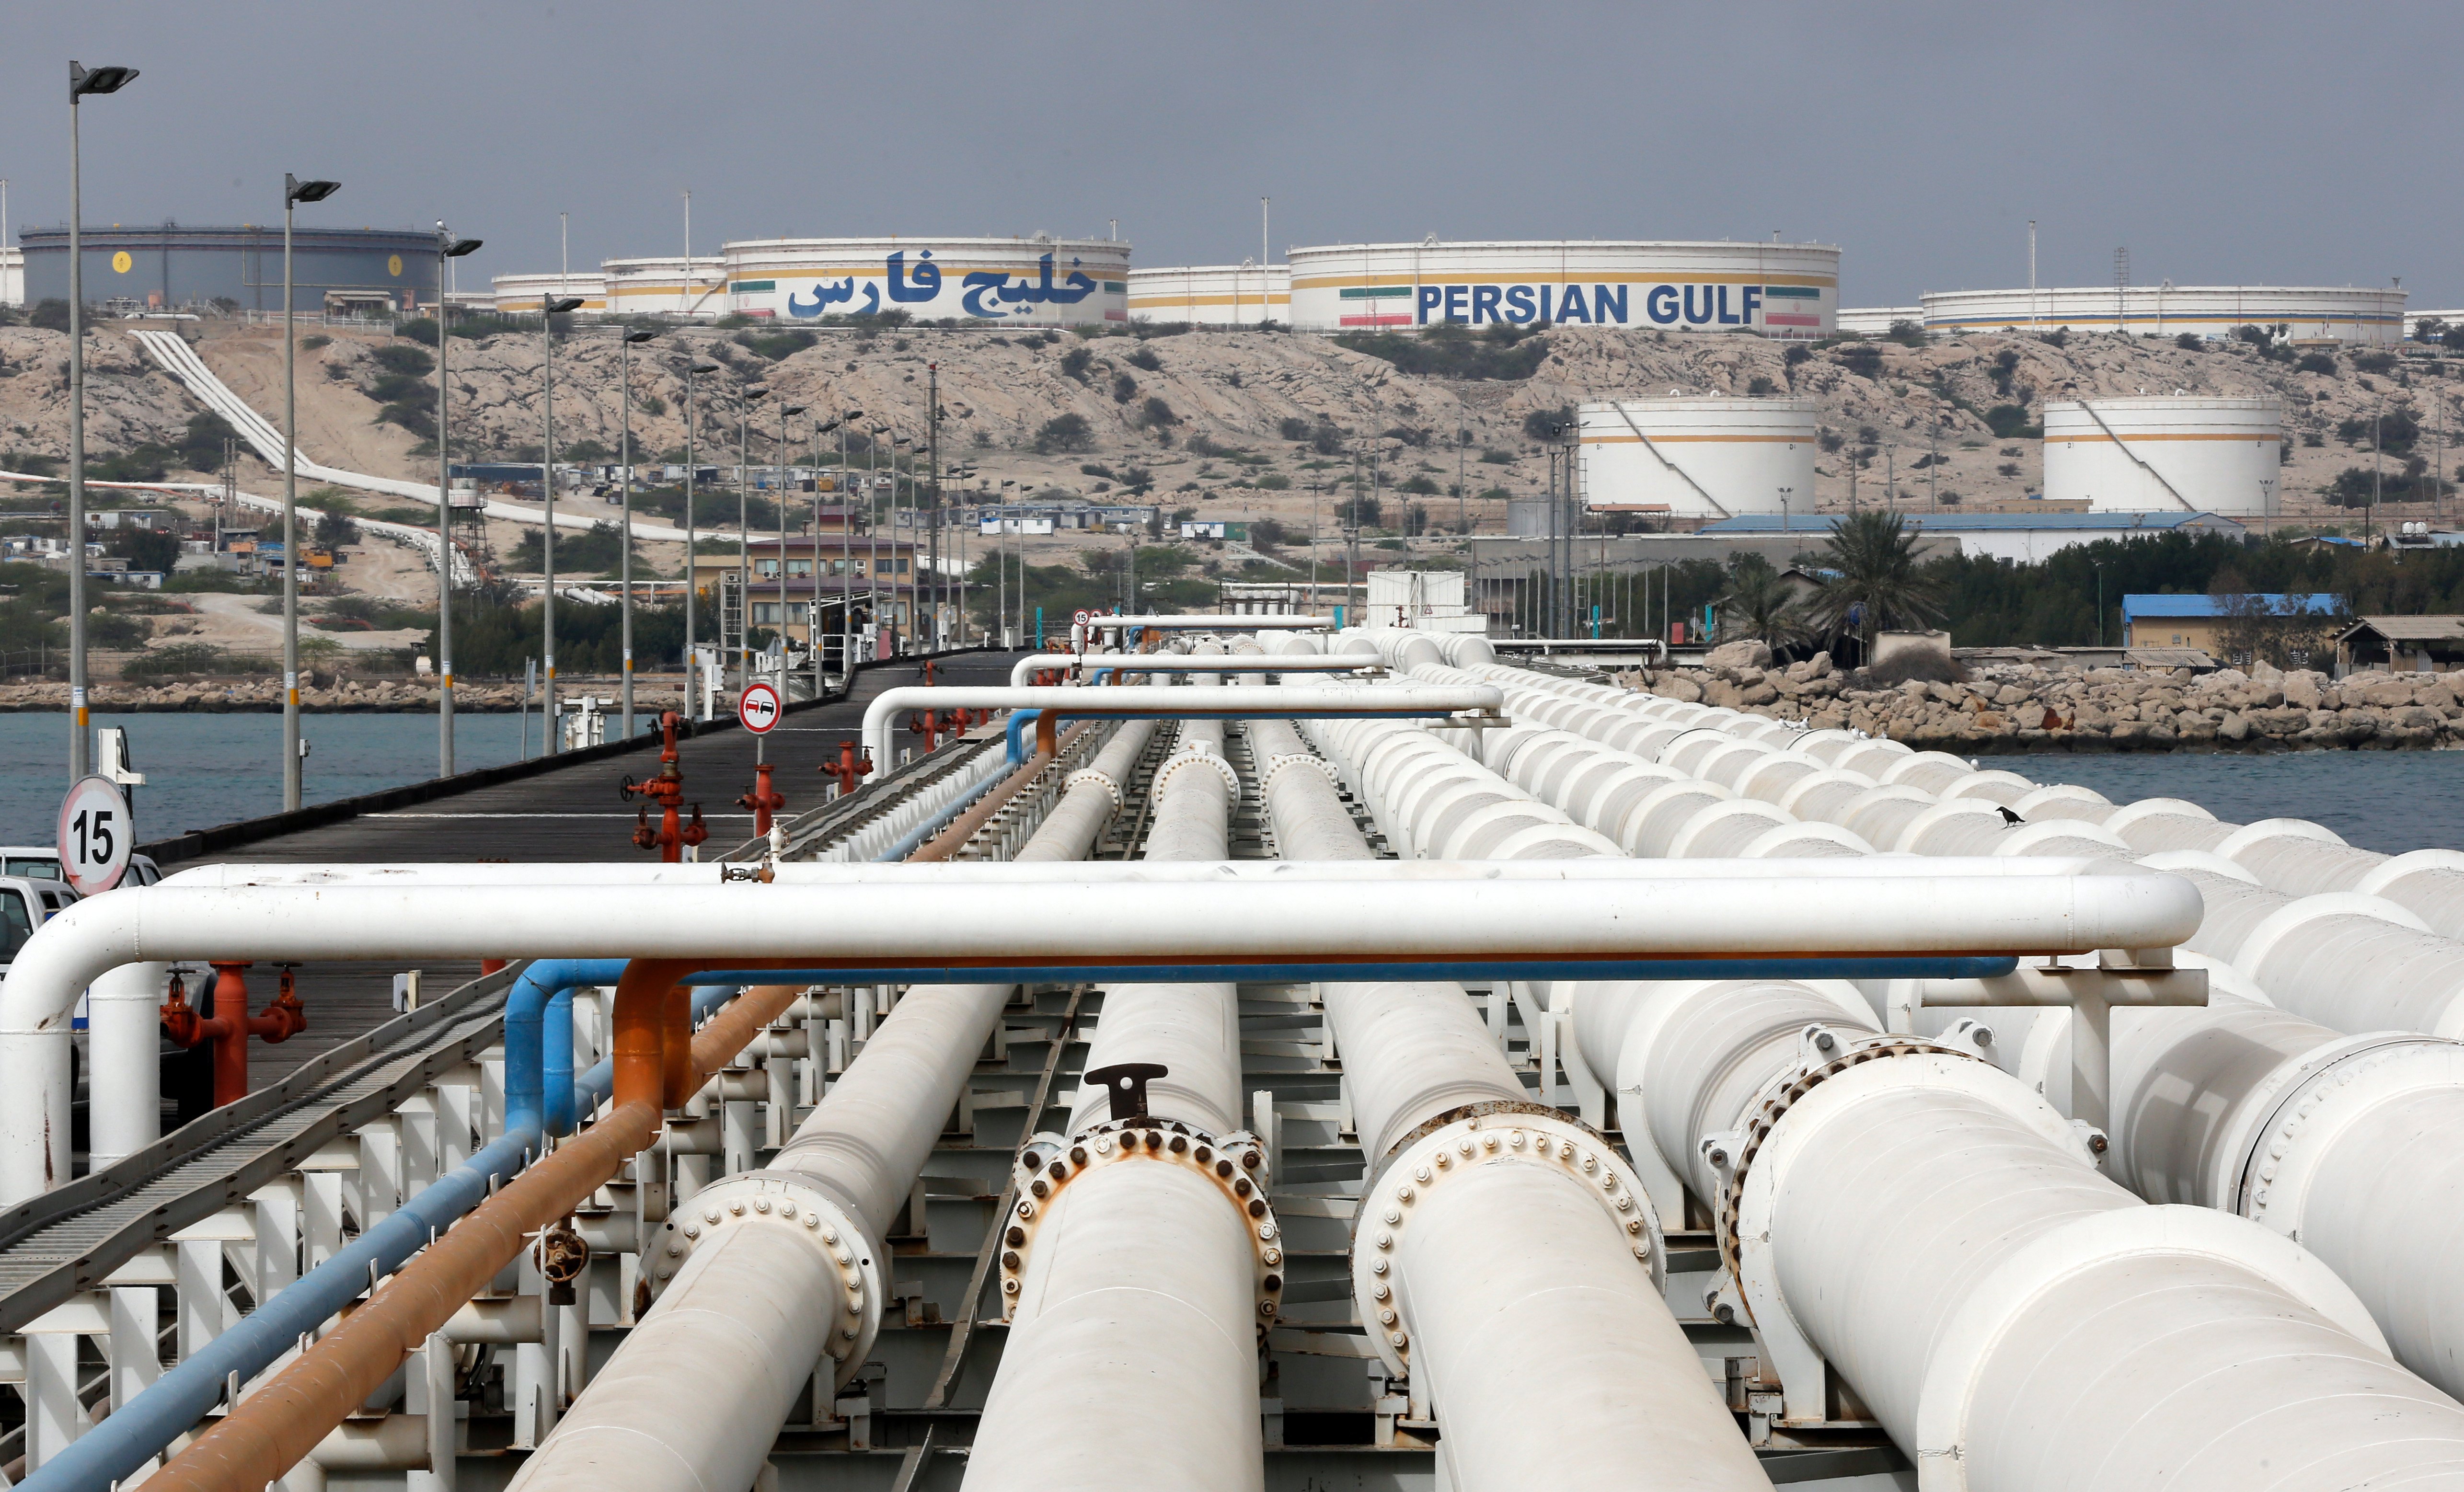 De Iraanse olieterminal Kharg waarvandaan het overgrote deel van de olie uit Iran wordt geëxporteerd.